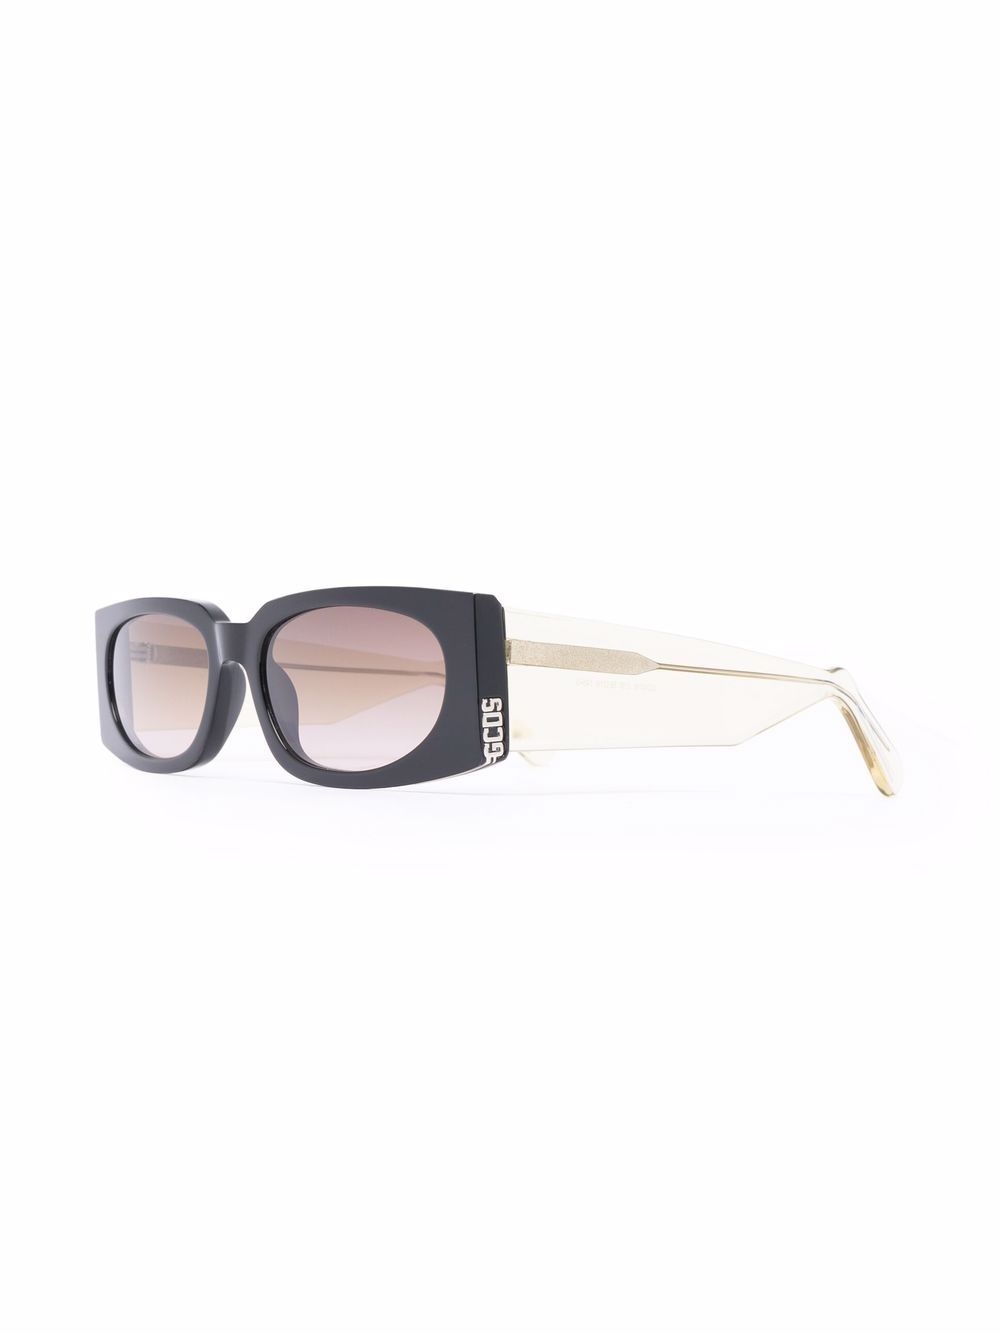 rectangular frame sunglasses - 2